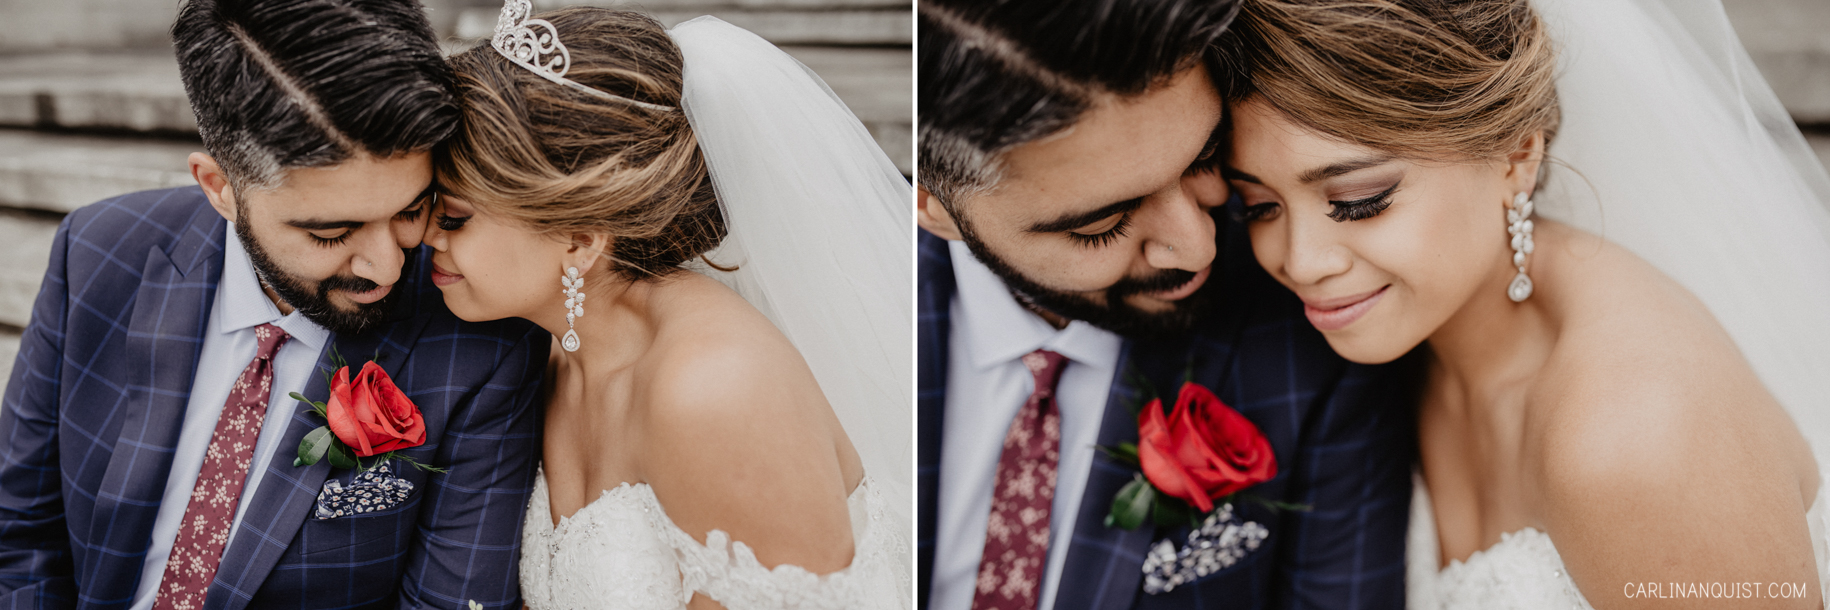 Bride & Groom Portraits - Catholic/Sikh Wedding Photographer Calgary